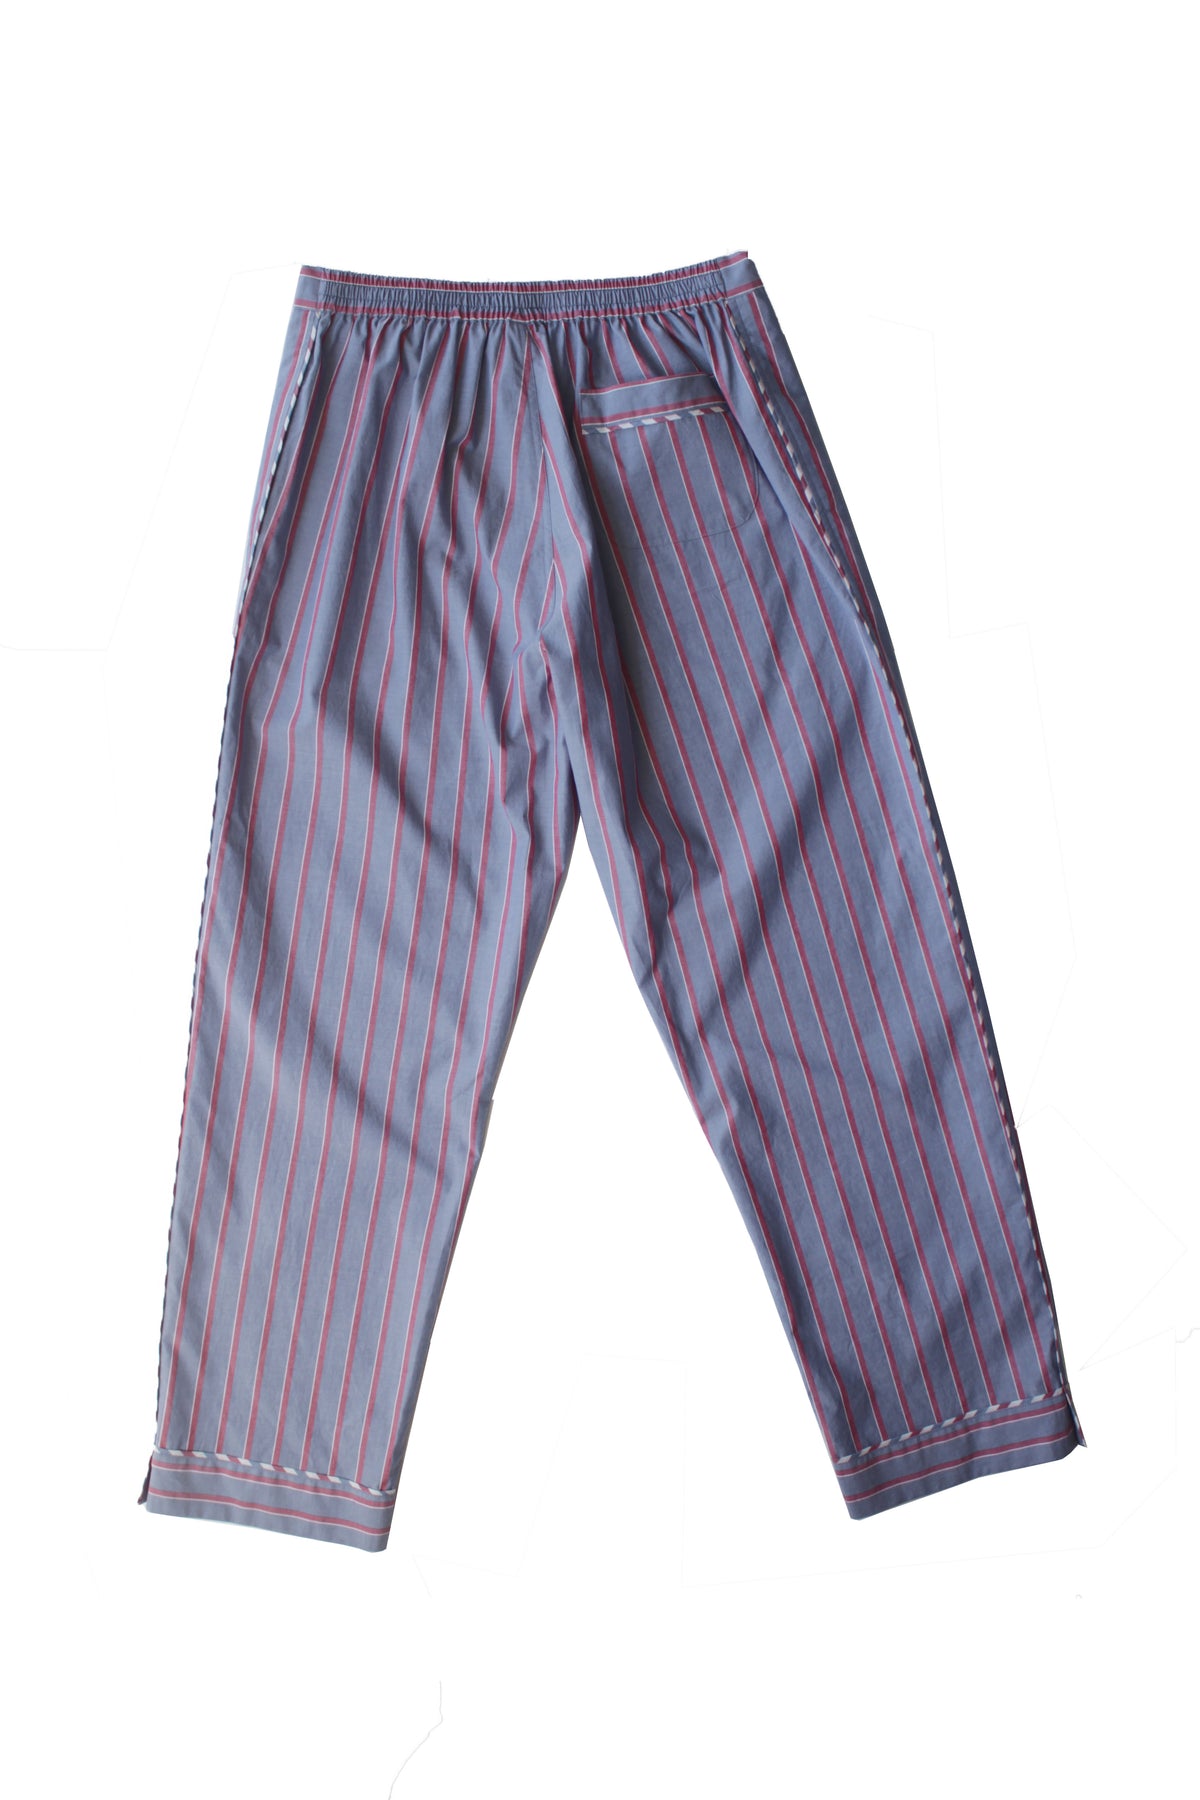 Saturn Men's Pajama Pant in Grey Red Stripe